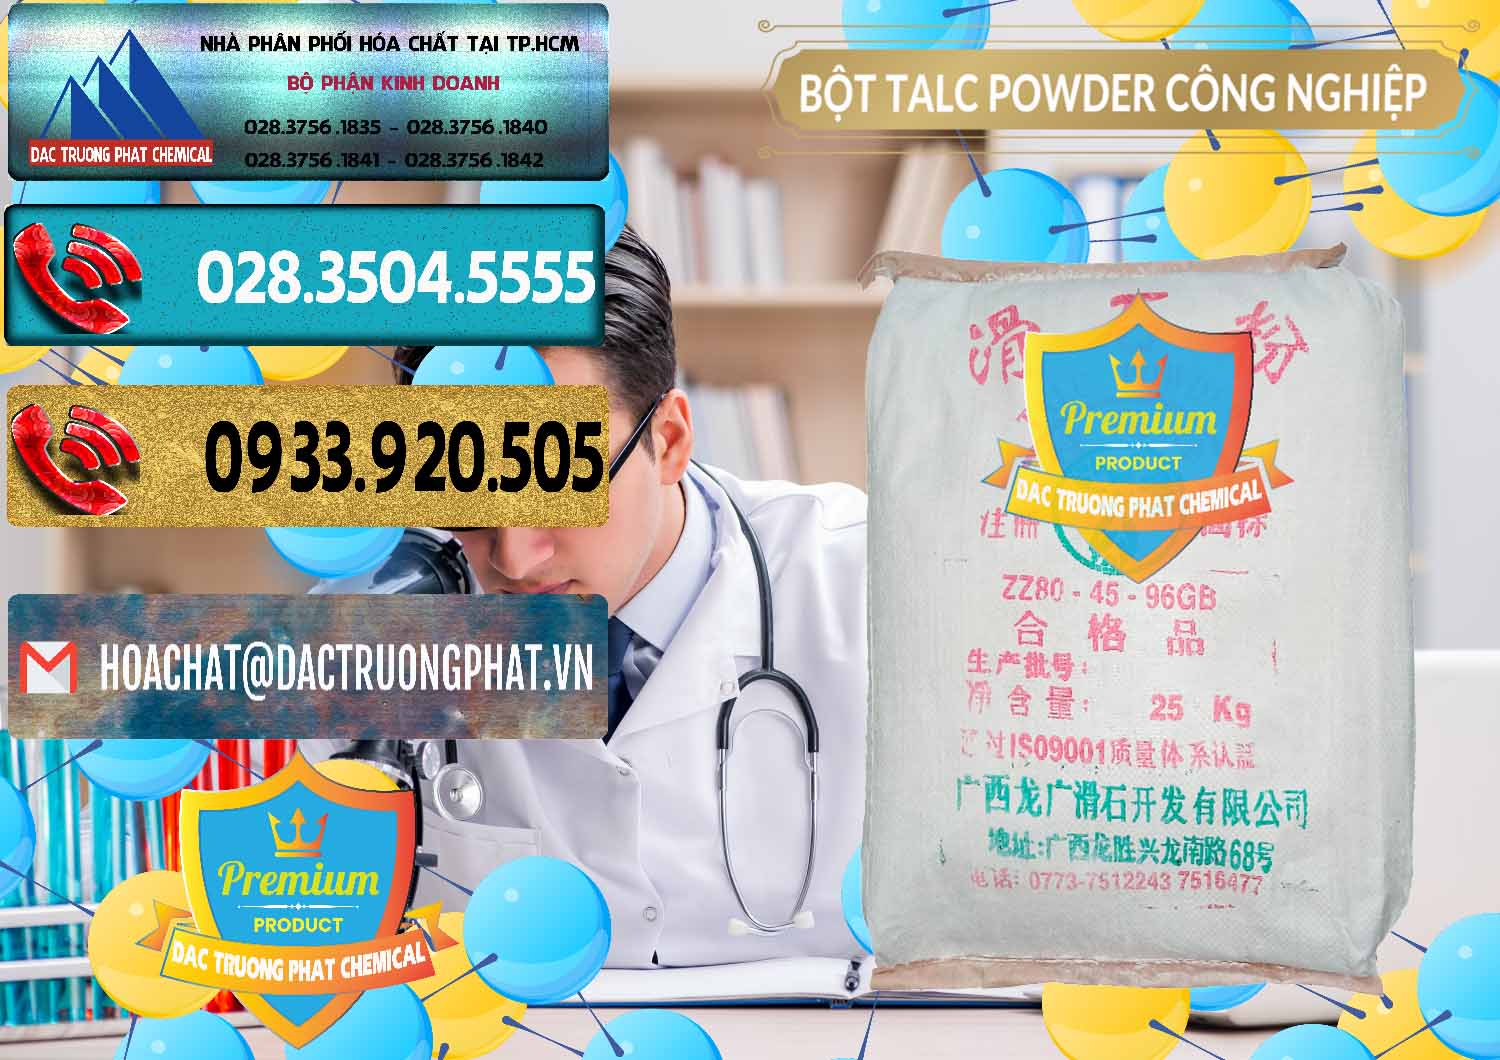 Bán và phân phối Bột Talc Powder Công Nghiệp Trung Quốc China - 0037 - Nhà nhập khẩu & phân phối hóa chất tại TP.HCM - hoachatdetnhuom.com